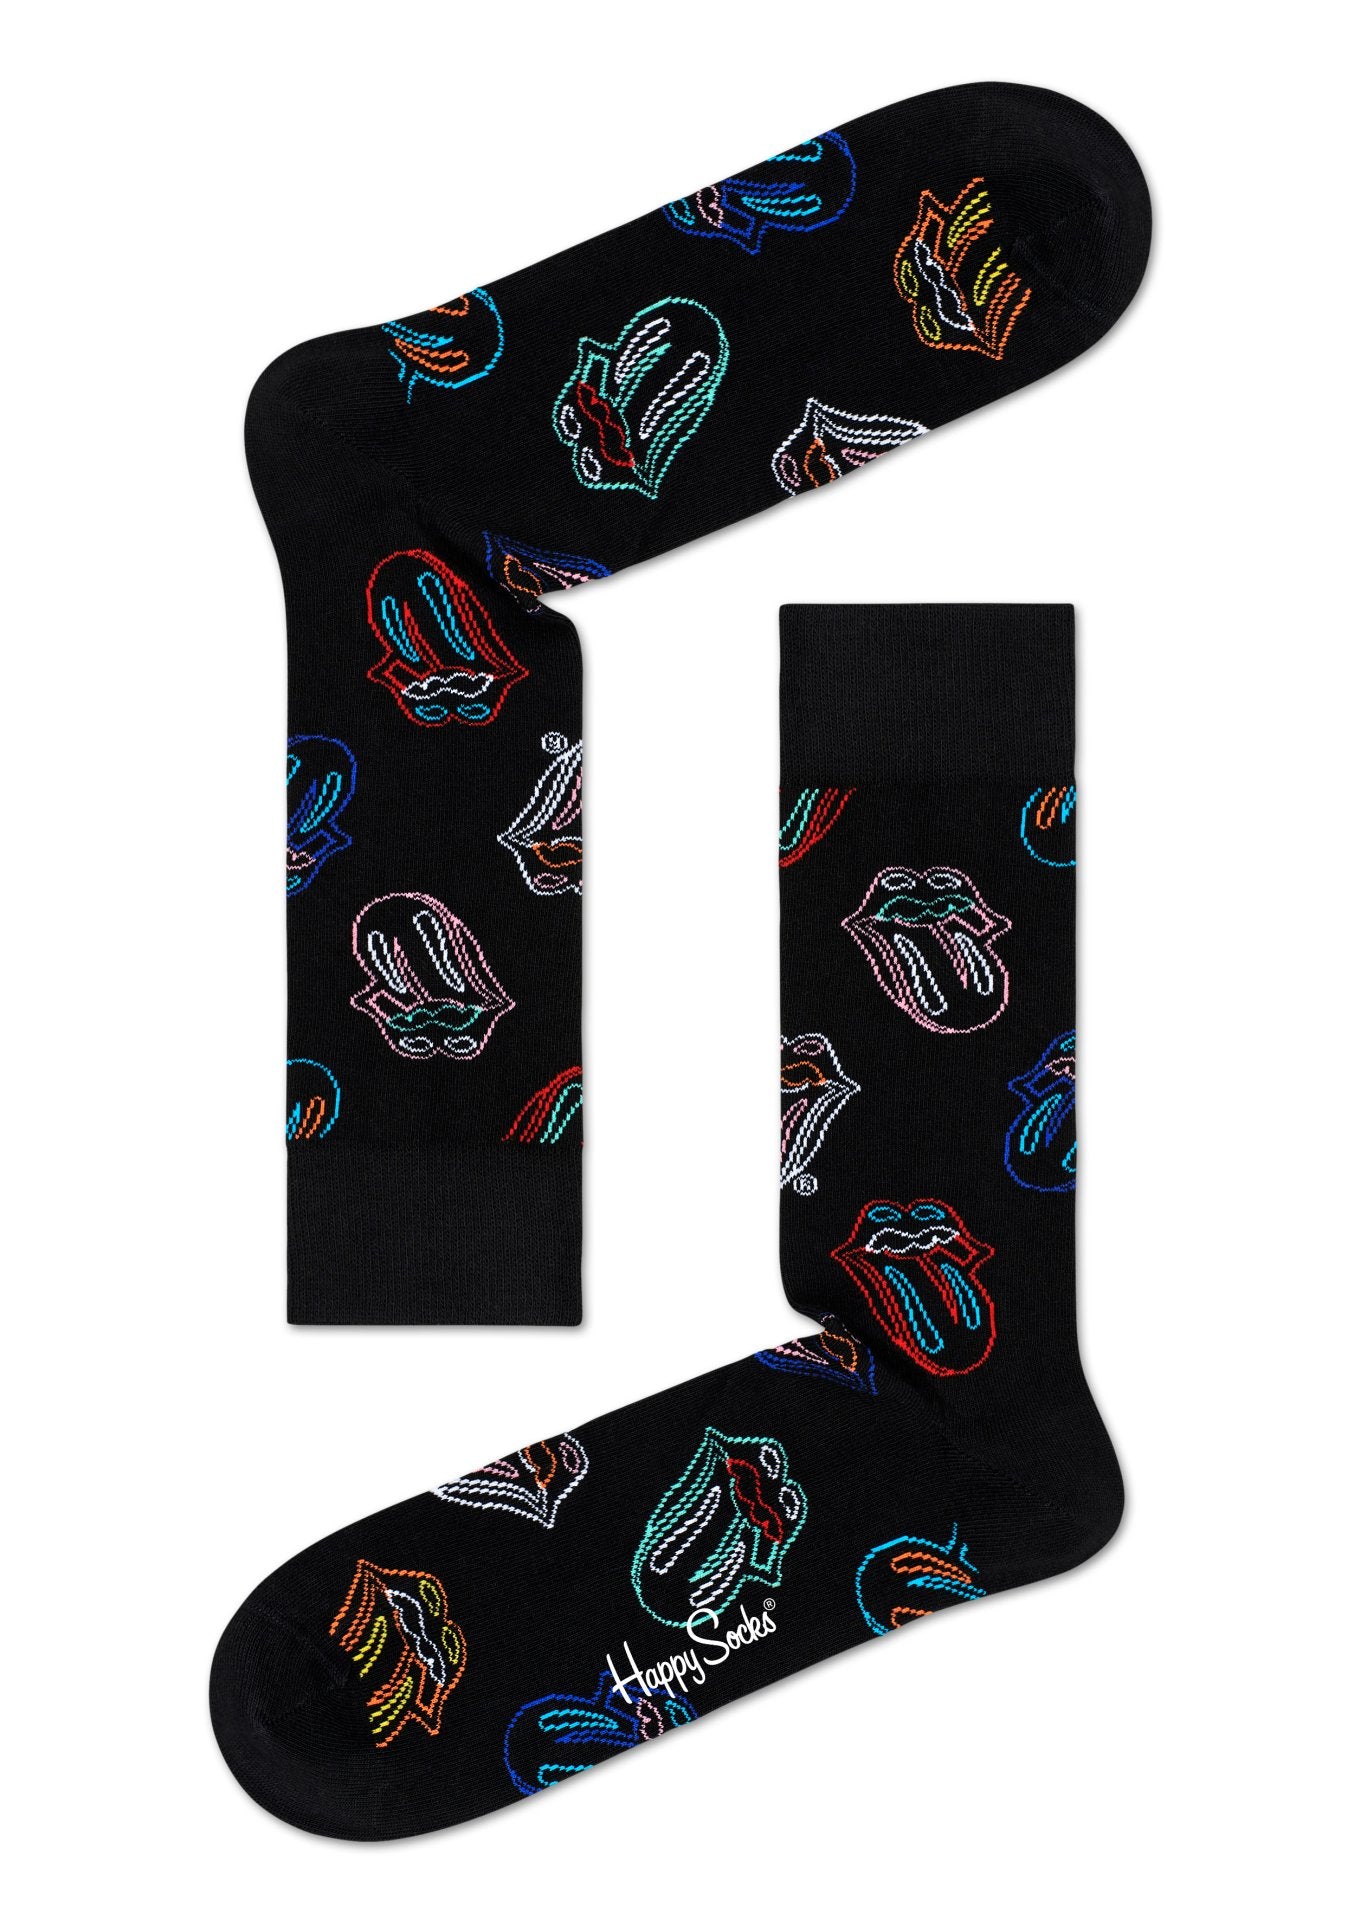 Černé ponožky s vypláznutým jazykem z kolekce Happy Socks x Rolling Stones, vzor Midnight Ramble